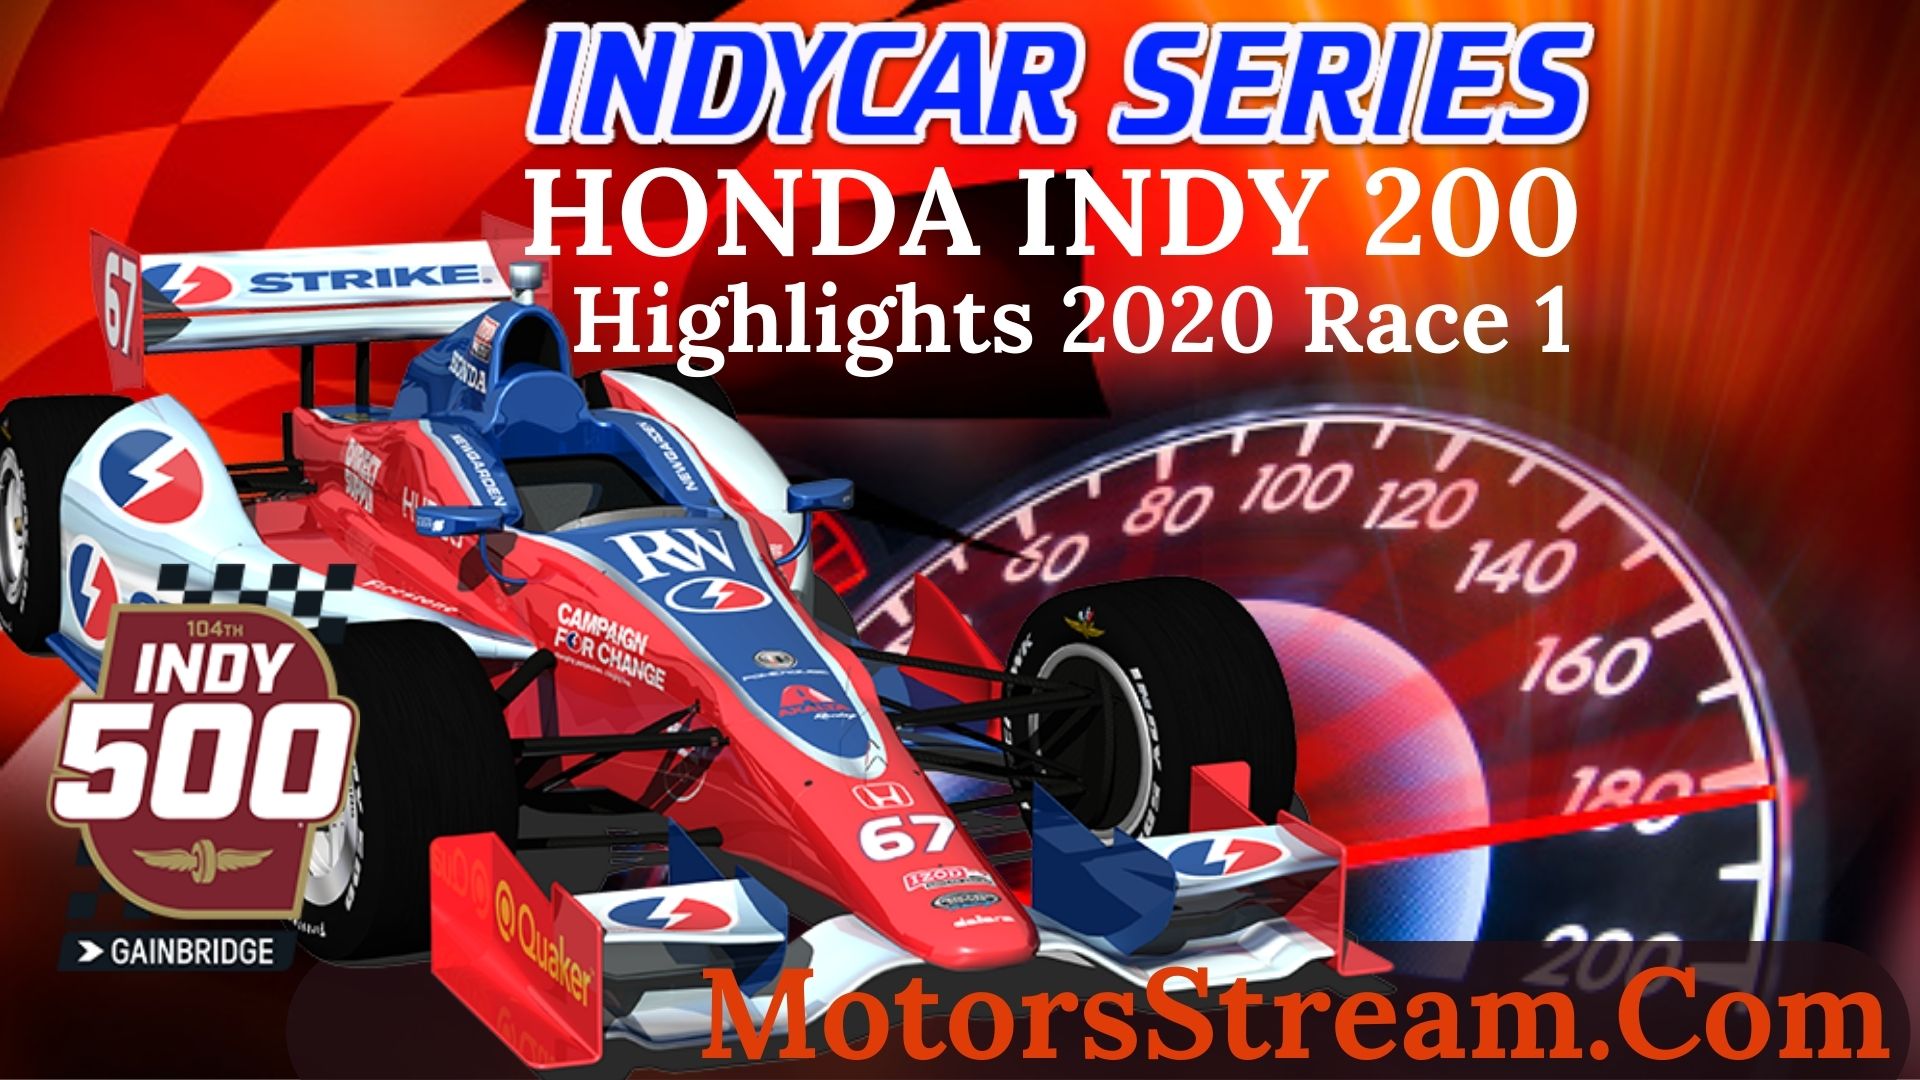 Honda Indy 200 Race 1 Highlight 2020 INDYCAR